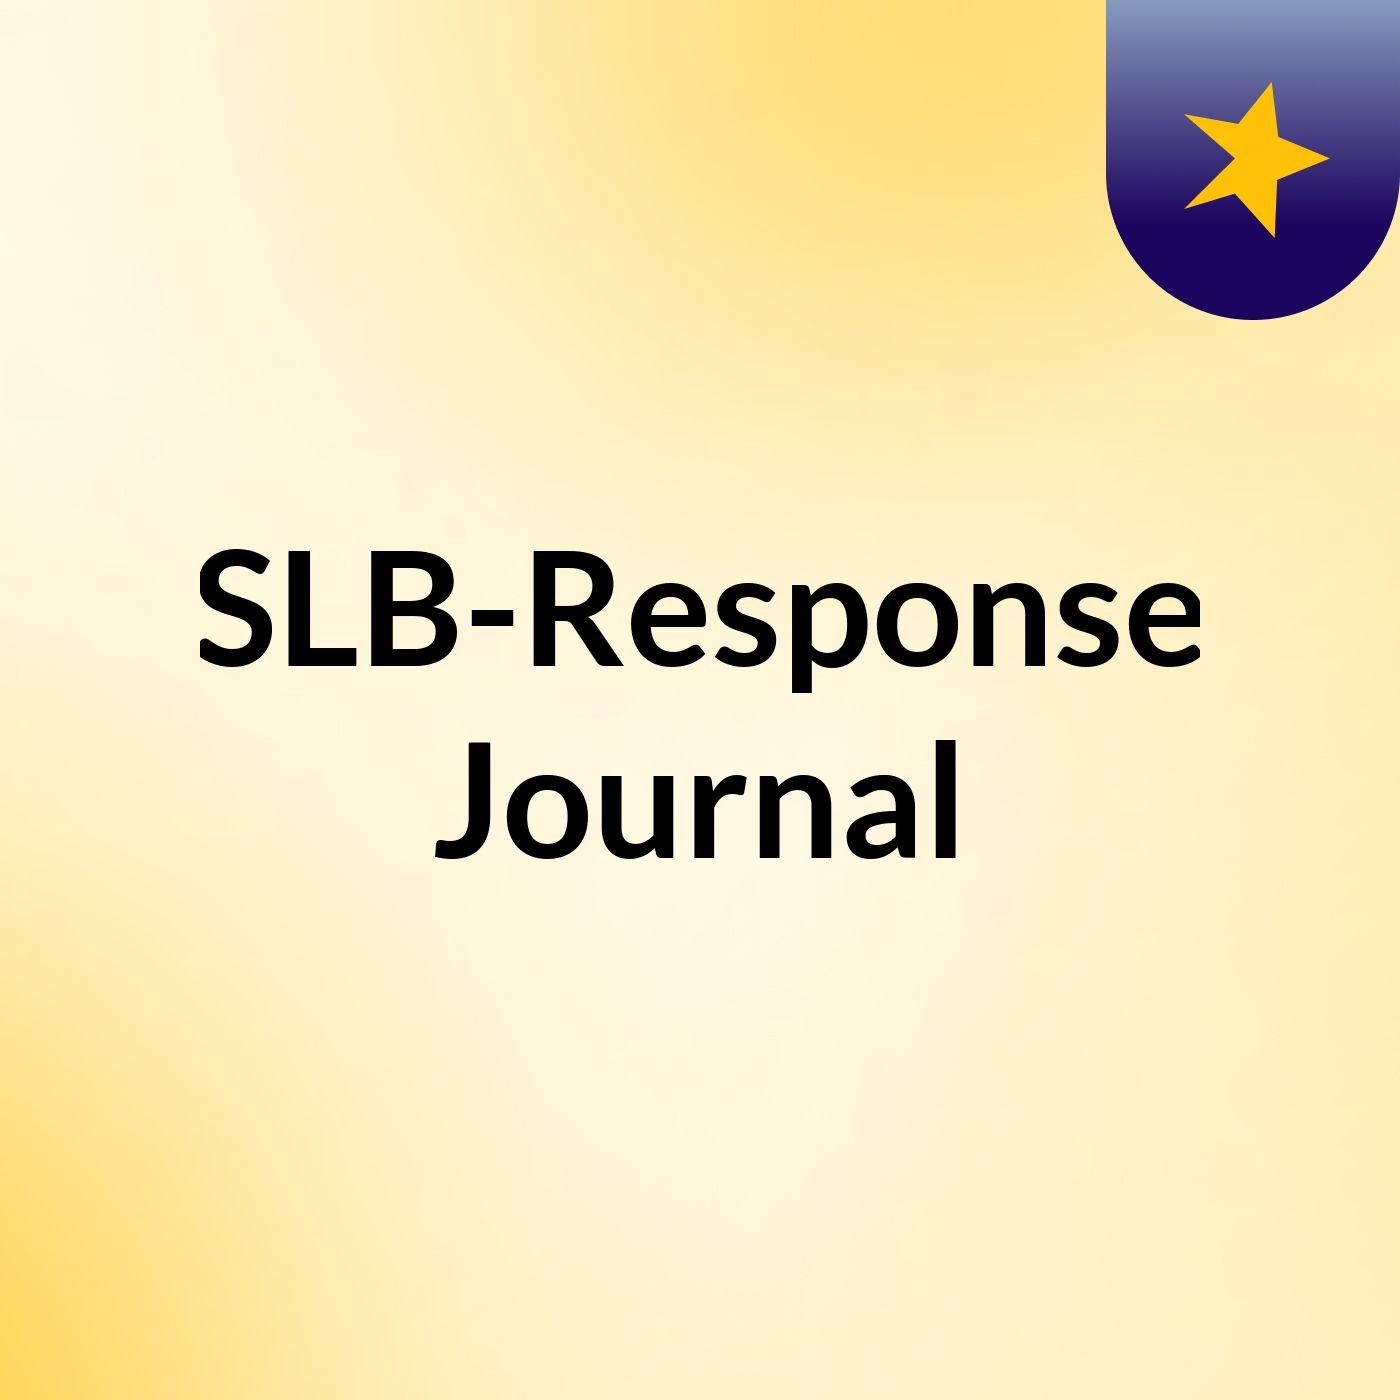 Episode 2 - SLB-Response Journal